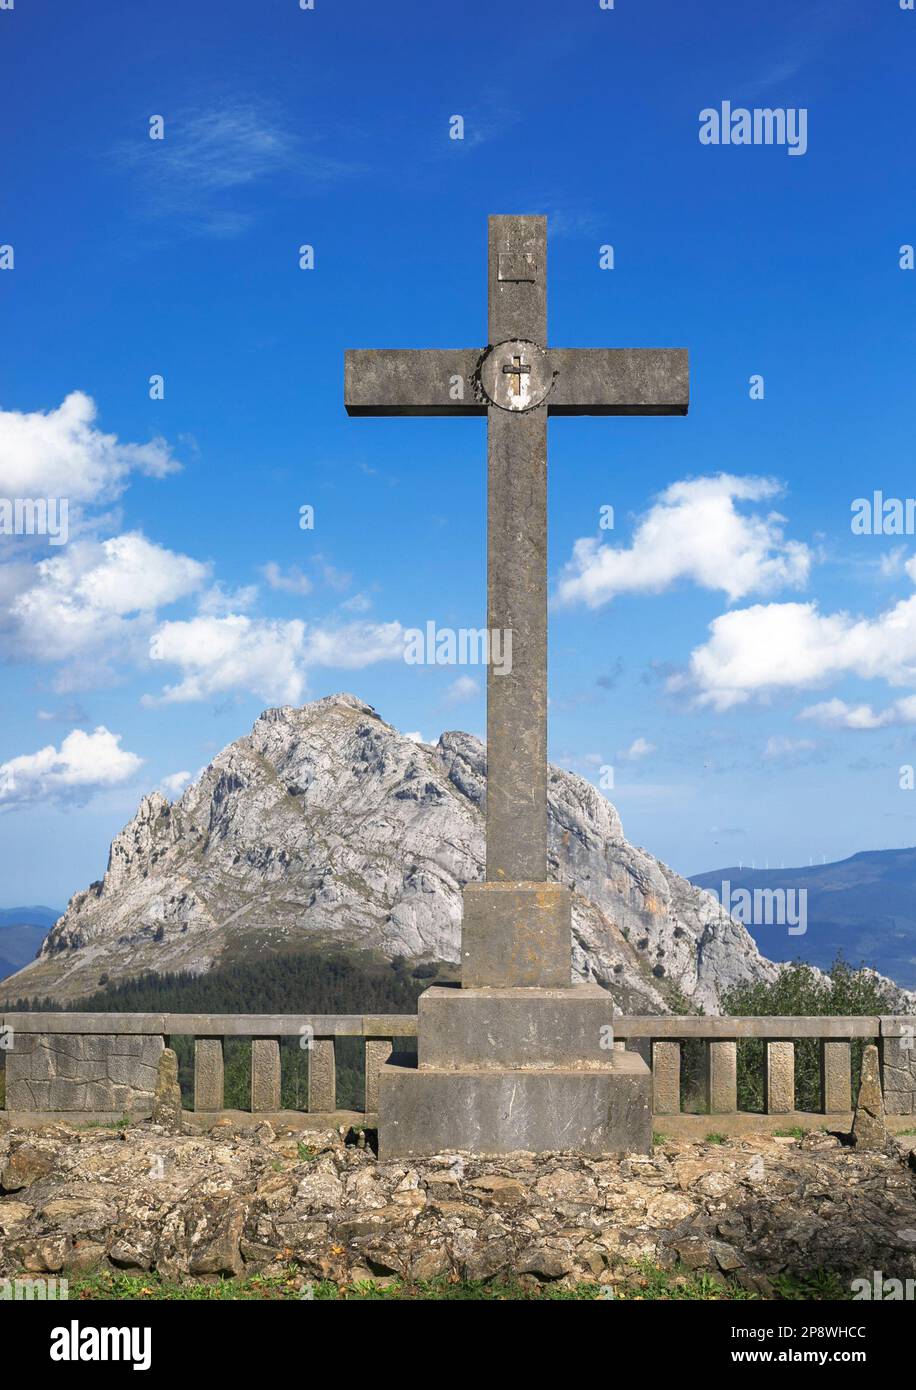 Détail d'une des croix au point de vue 'Las tres Cruces' dans le Parc naturel d'Urkiola, pays Basque, Espagne. Jour ensoleillé. Vue verticale. Banque D'Images